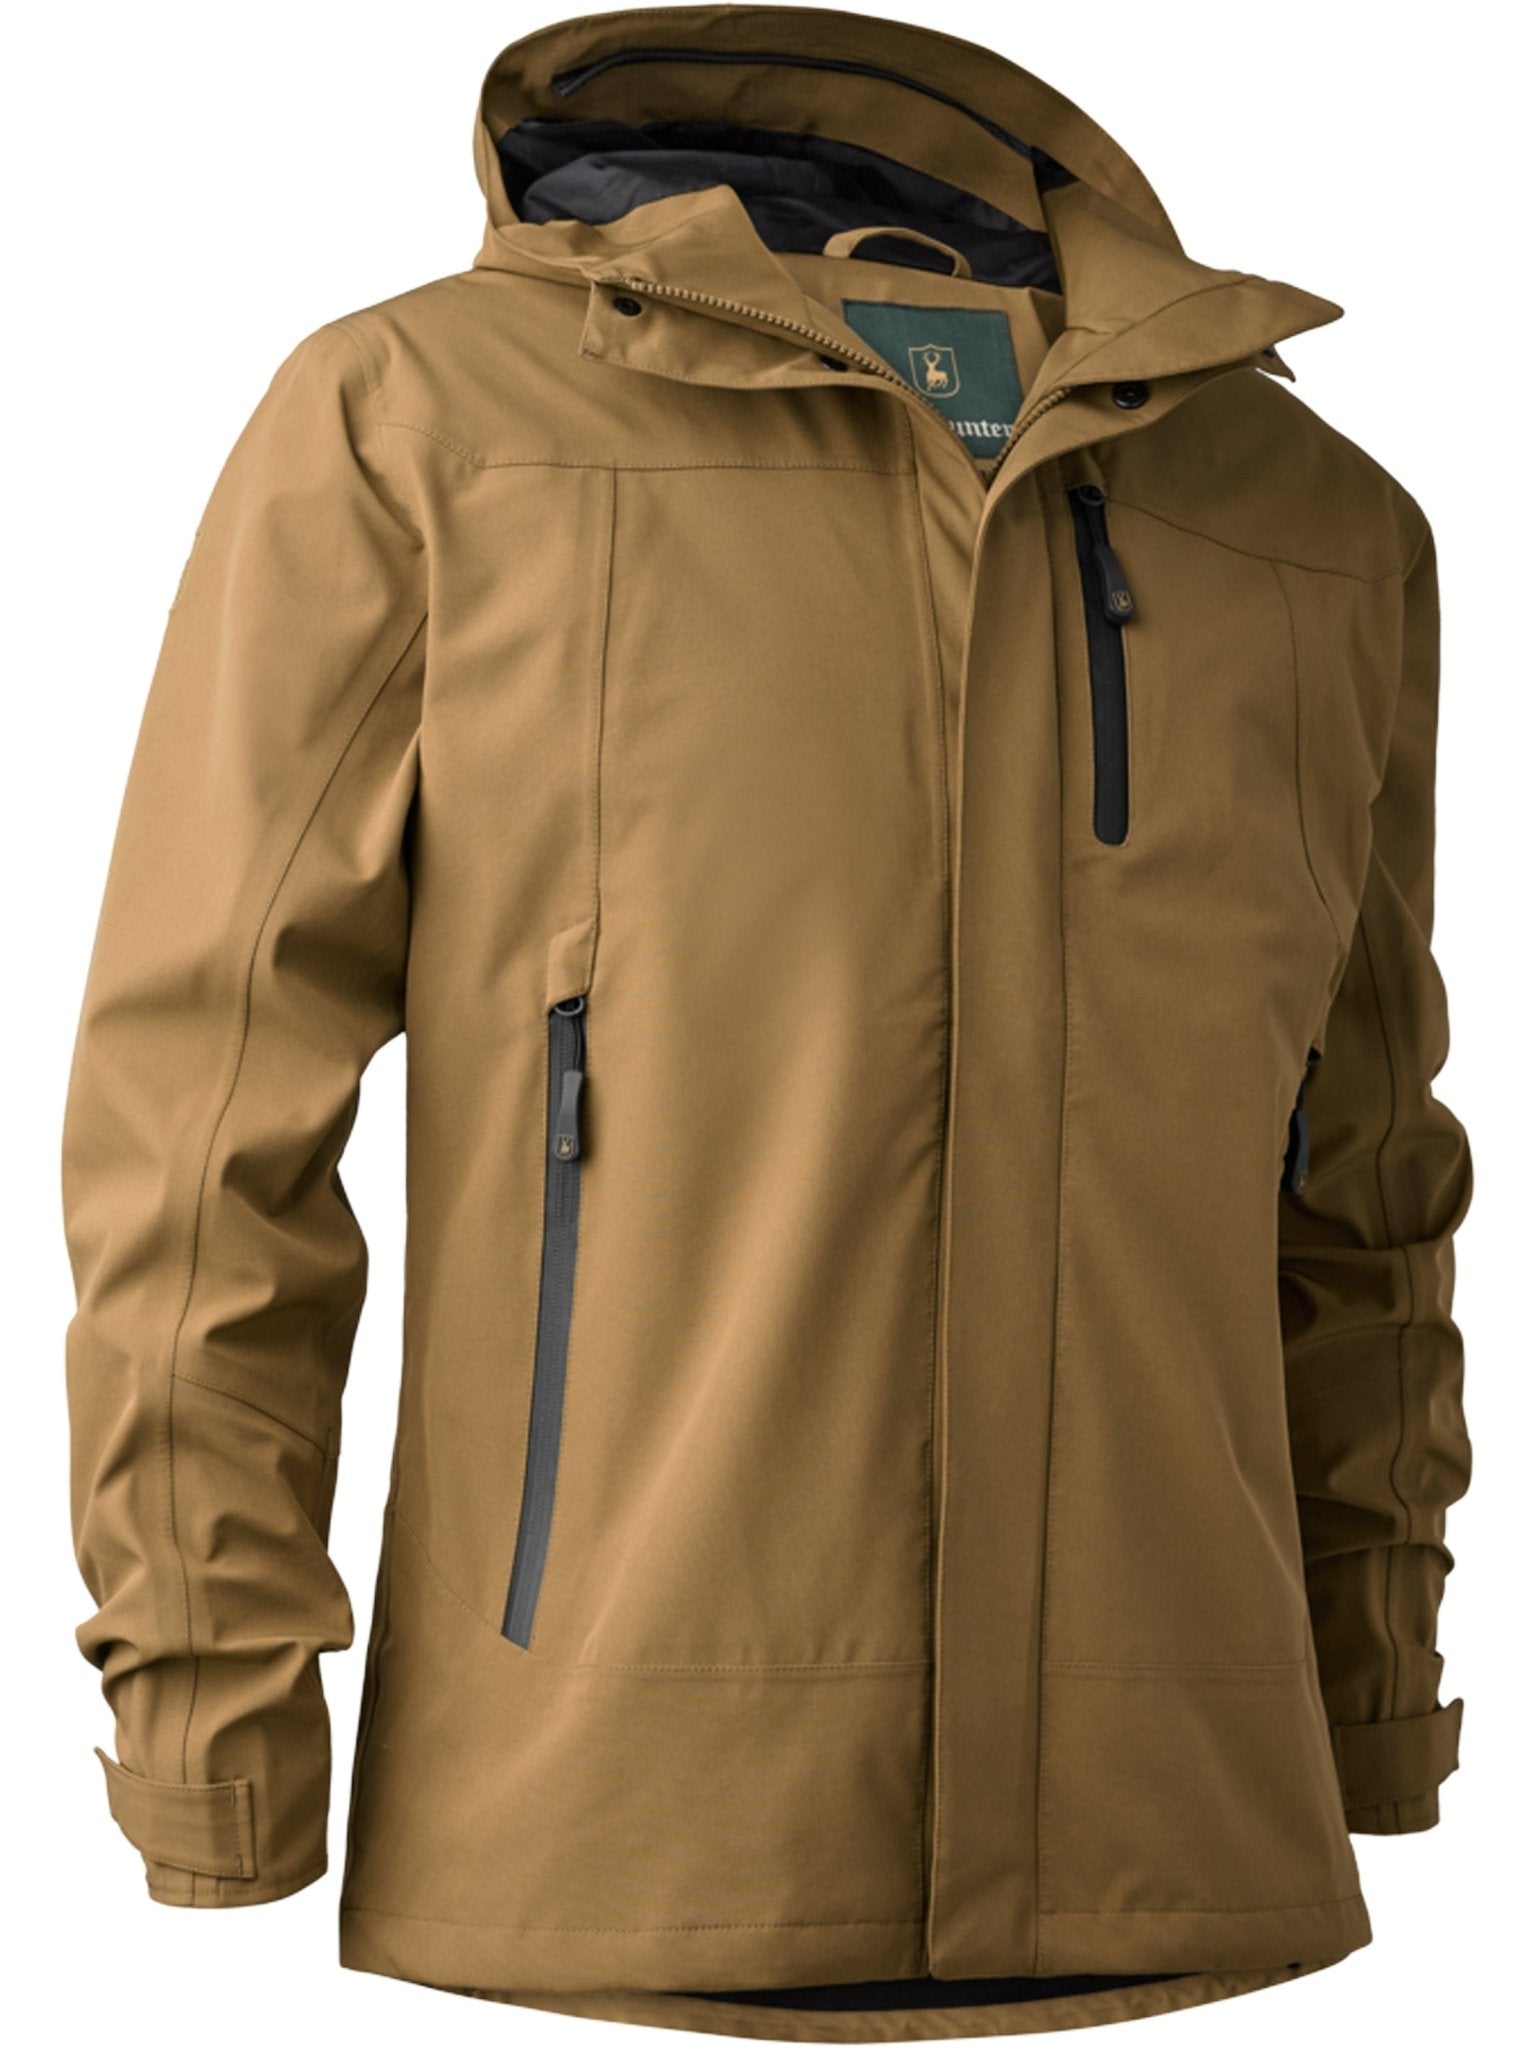 4elementsclothingDeerhunterDeerhunter - Sarek Mens Waterproof & Windproof Jacket with Taped Seams, breathable, 4 way StretchOuterwear5430-347-S